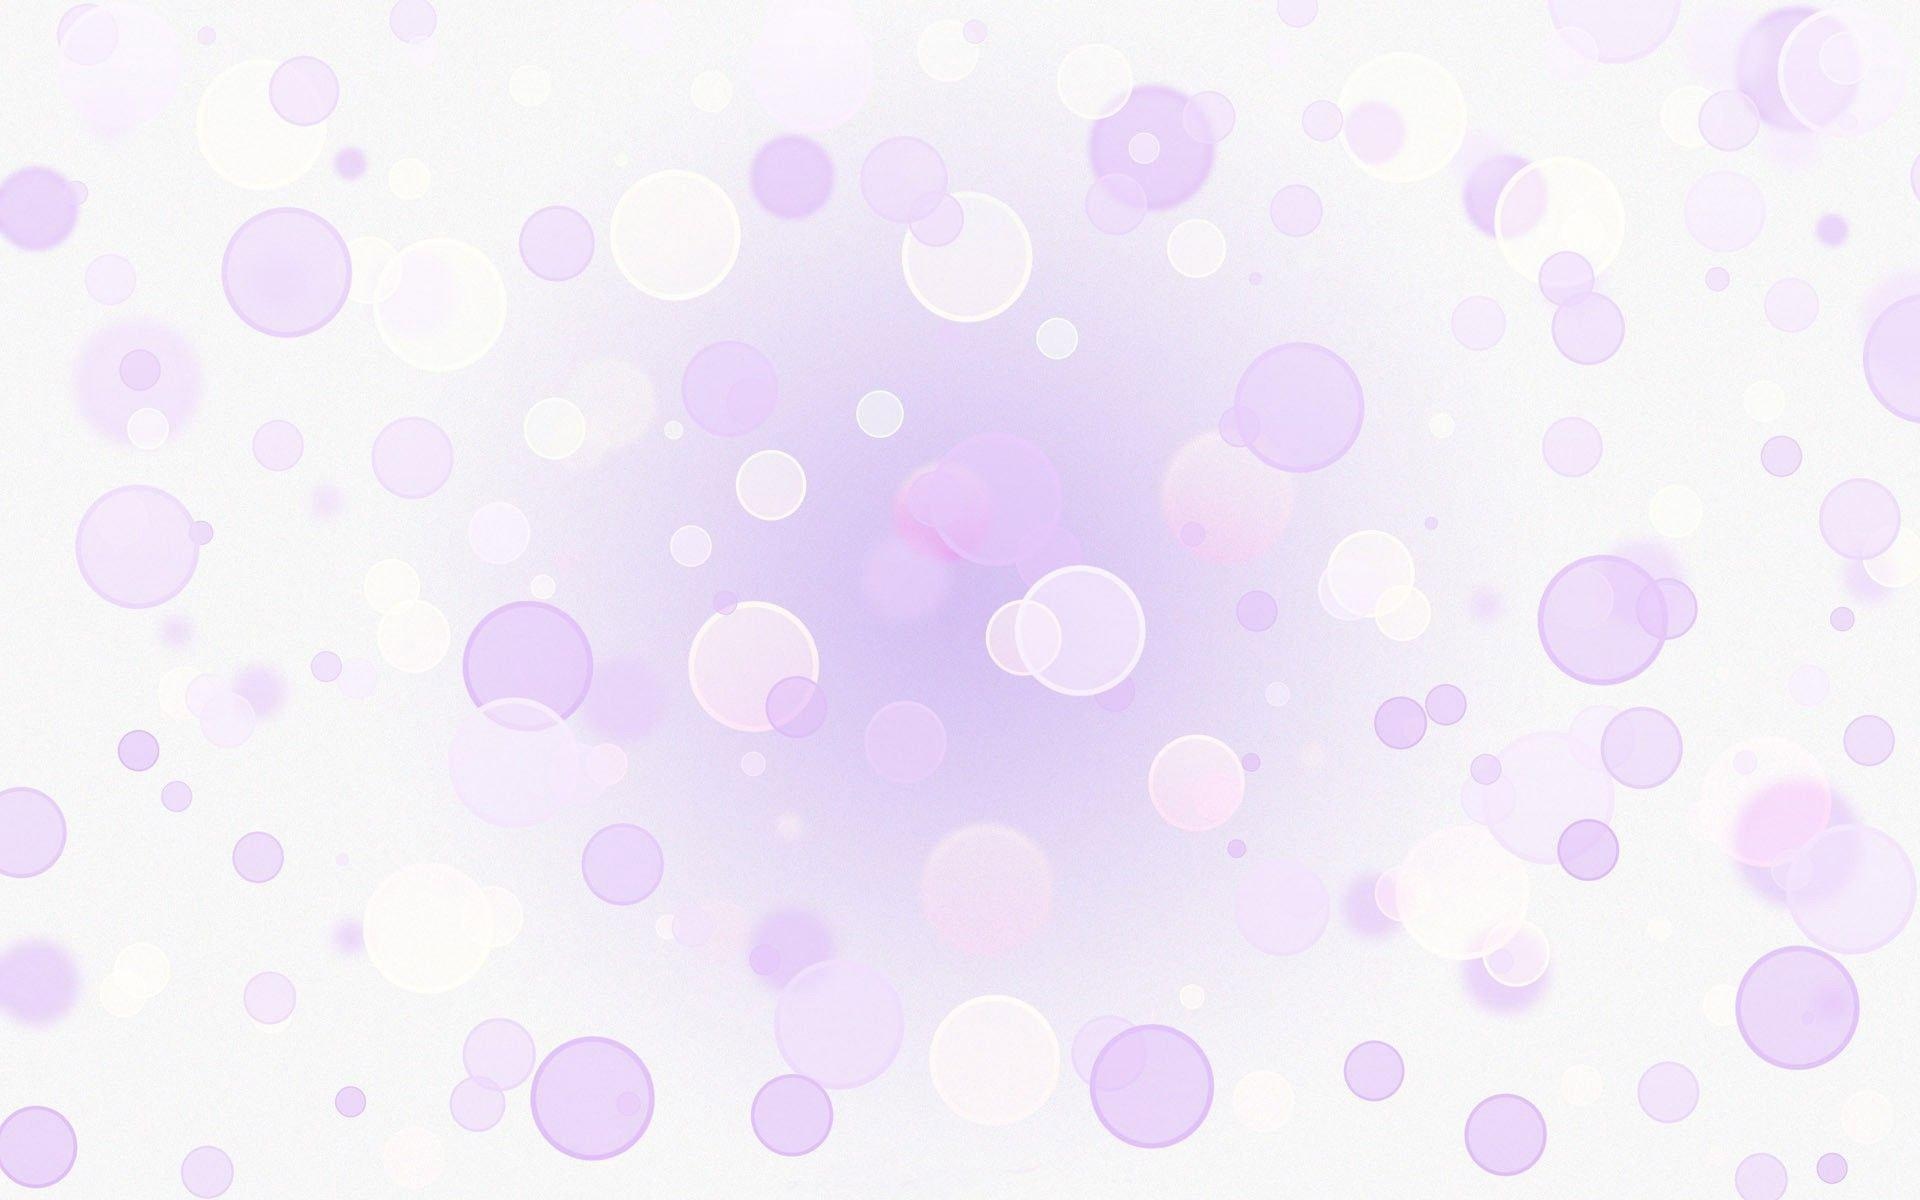 紫色和白色的圆圈壁纸1152x864分辨率查看